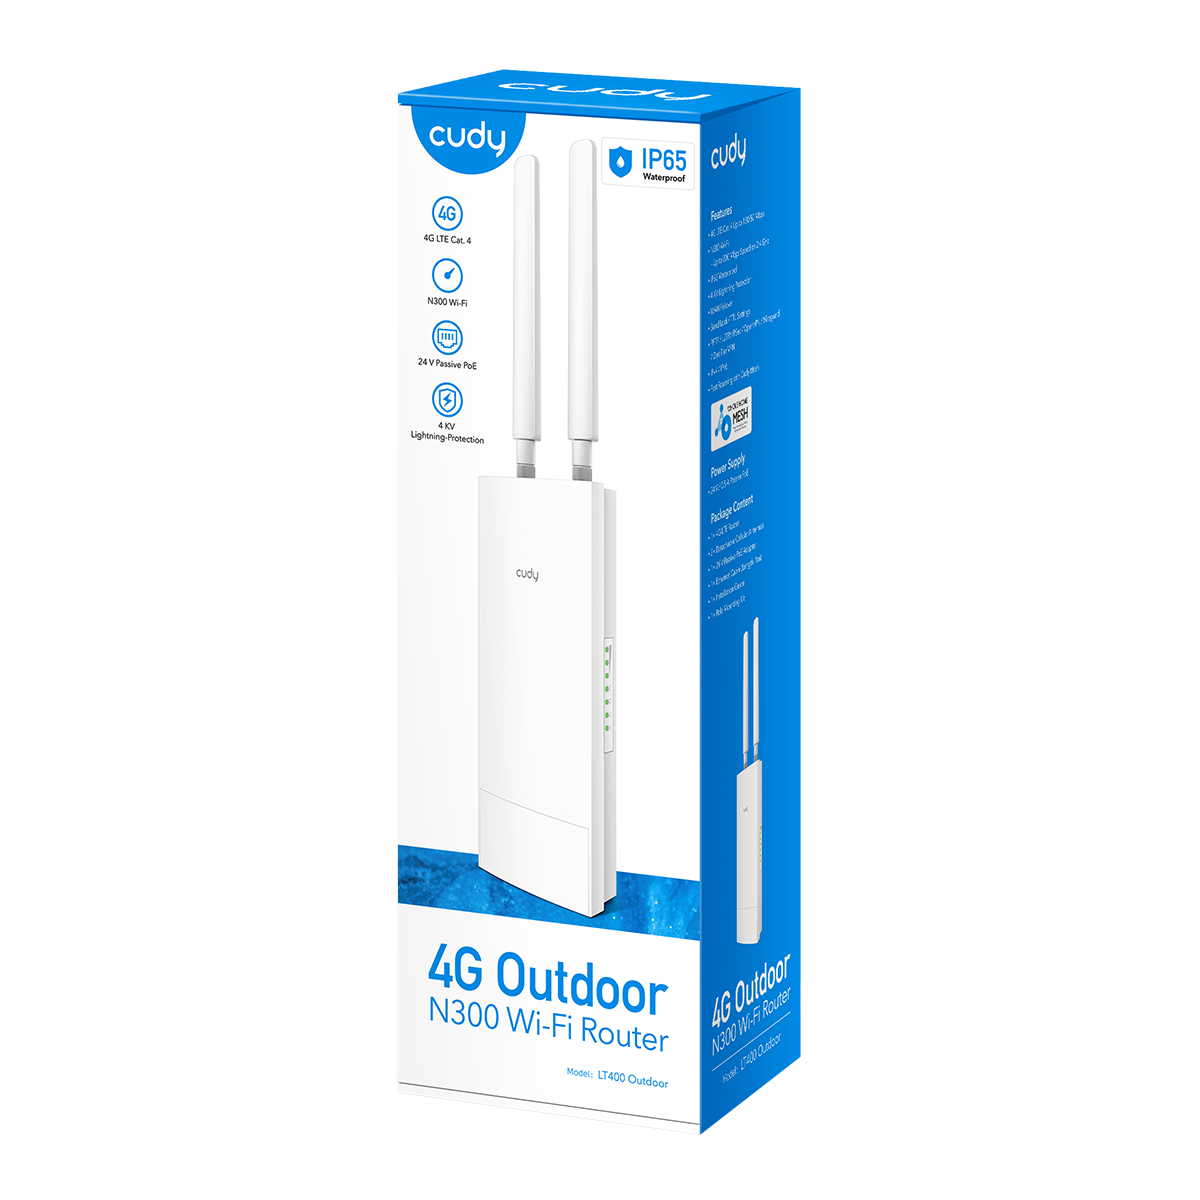 Outdoor/Indoor 4G N300 Wi-Fi Router, LT400 Outdoor 1.0